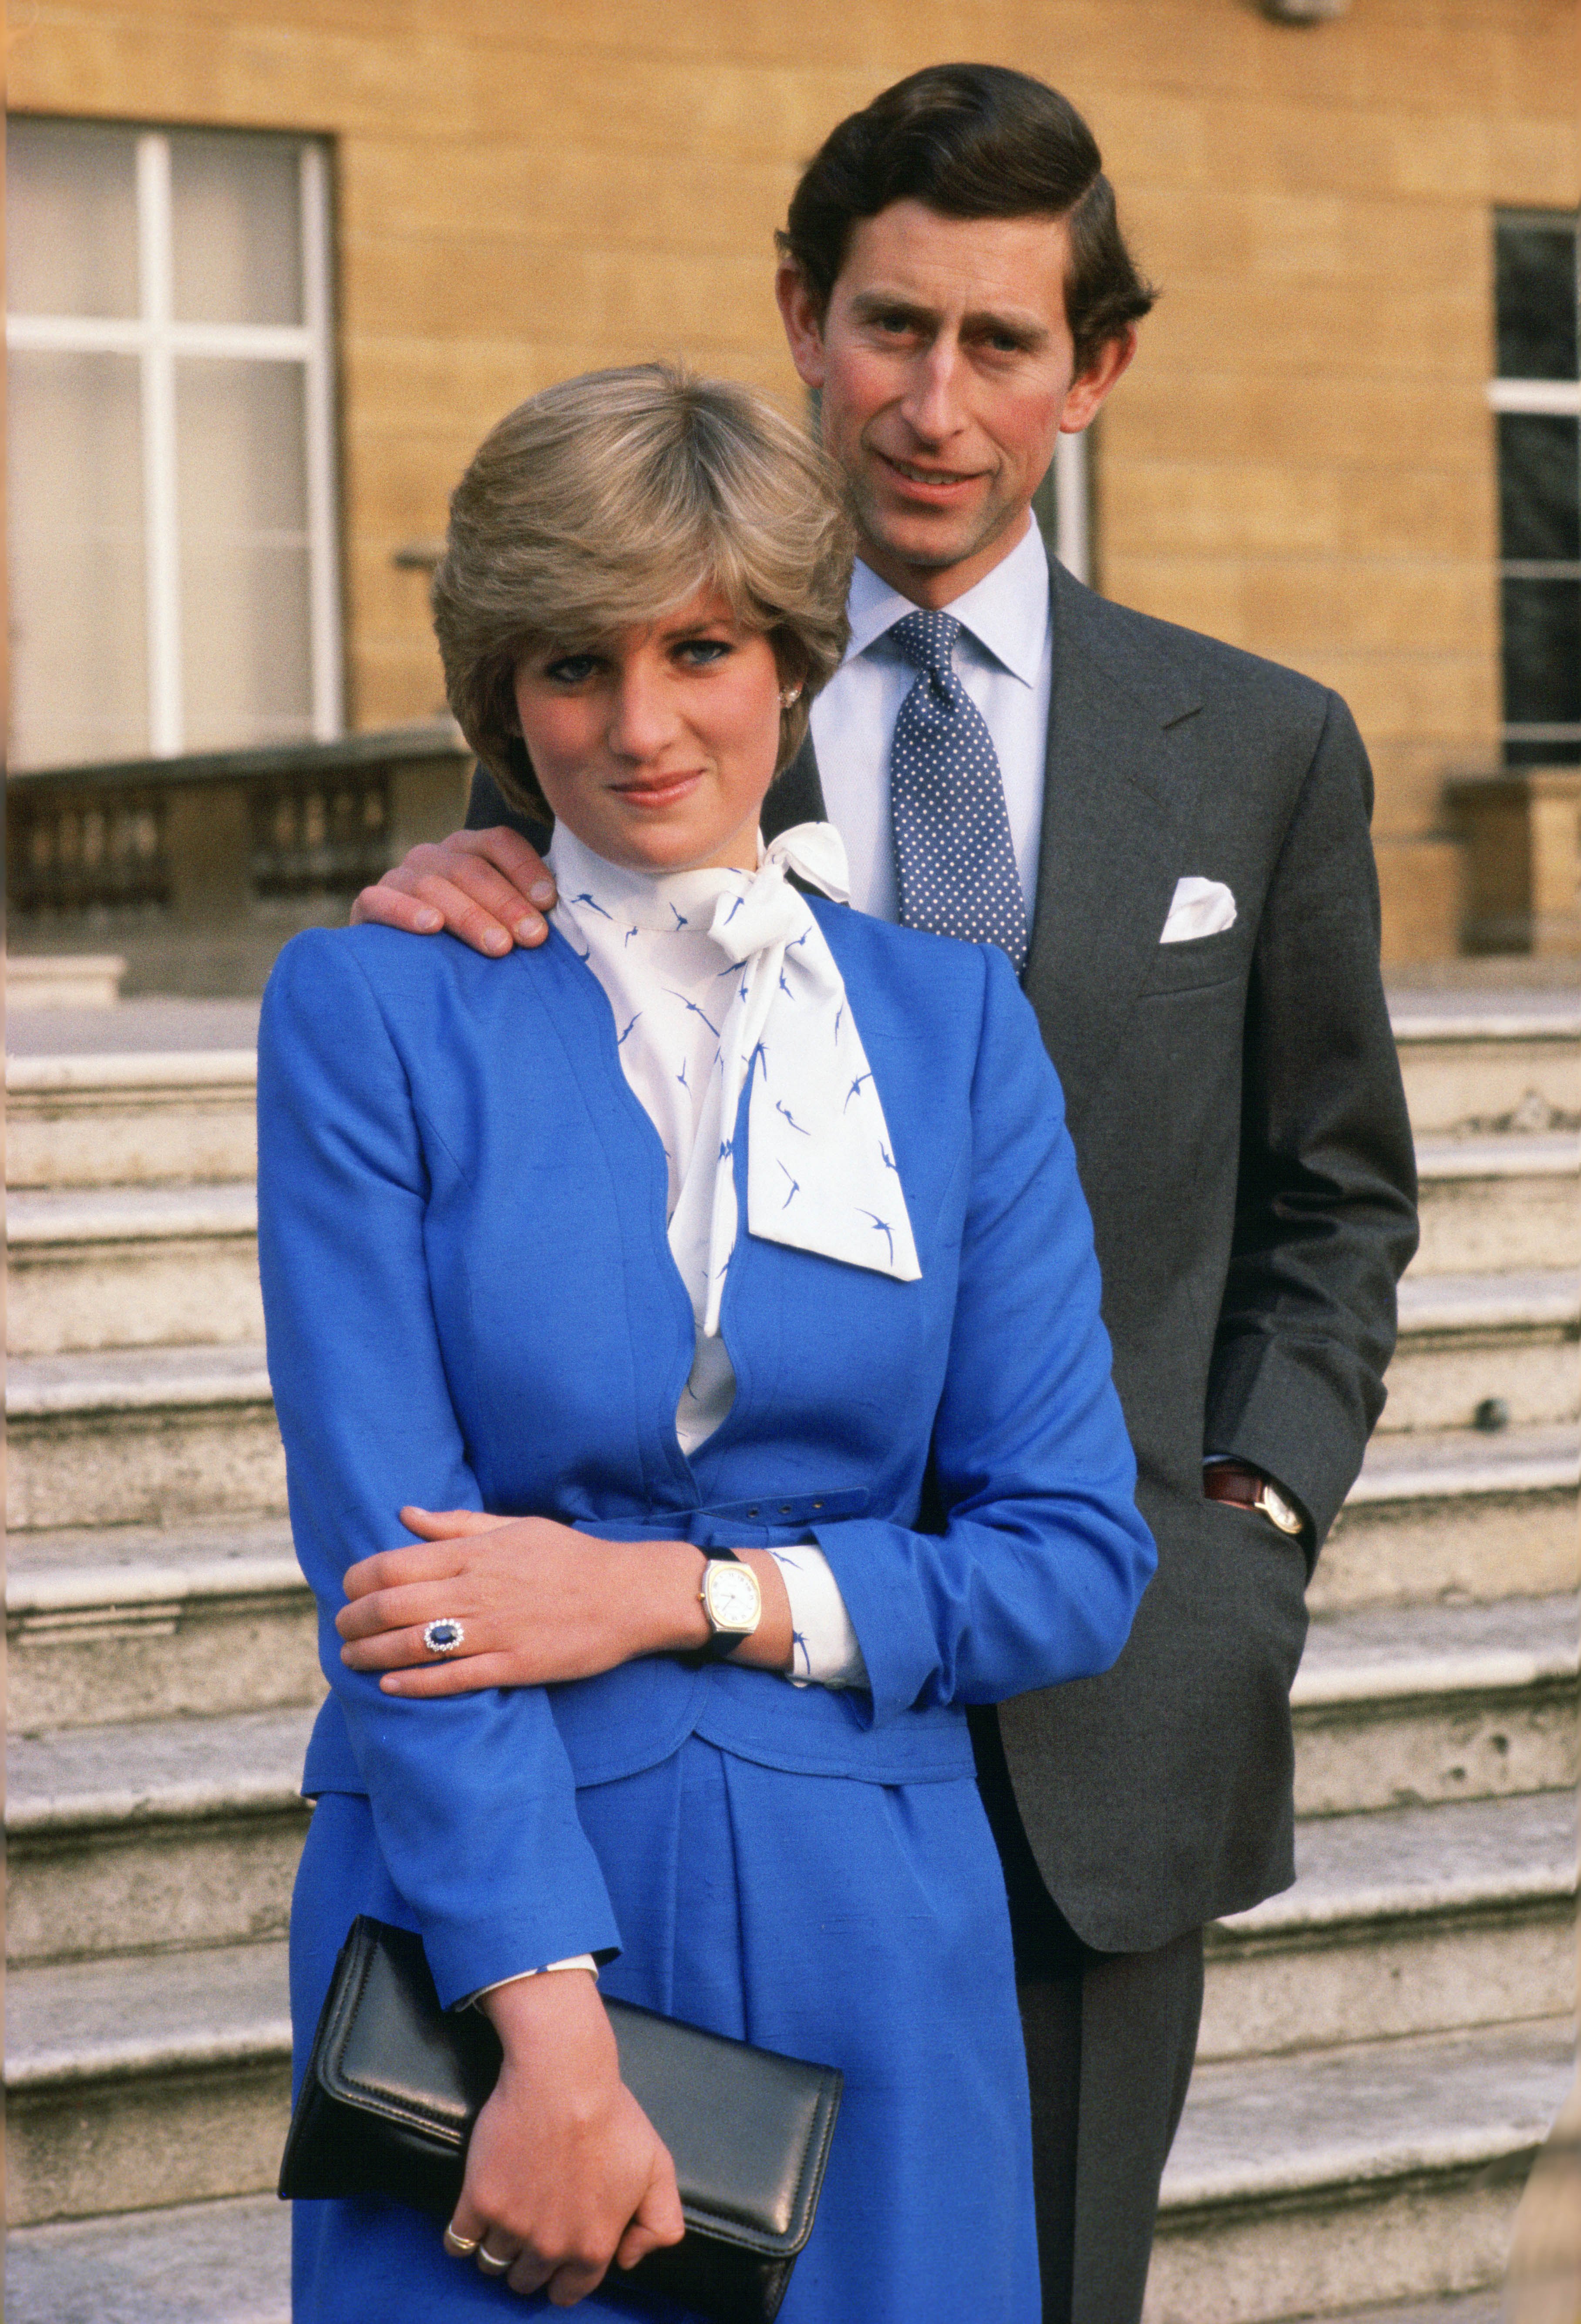 Princess Diana engagement photos